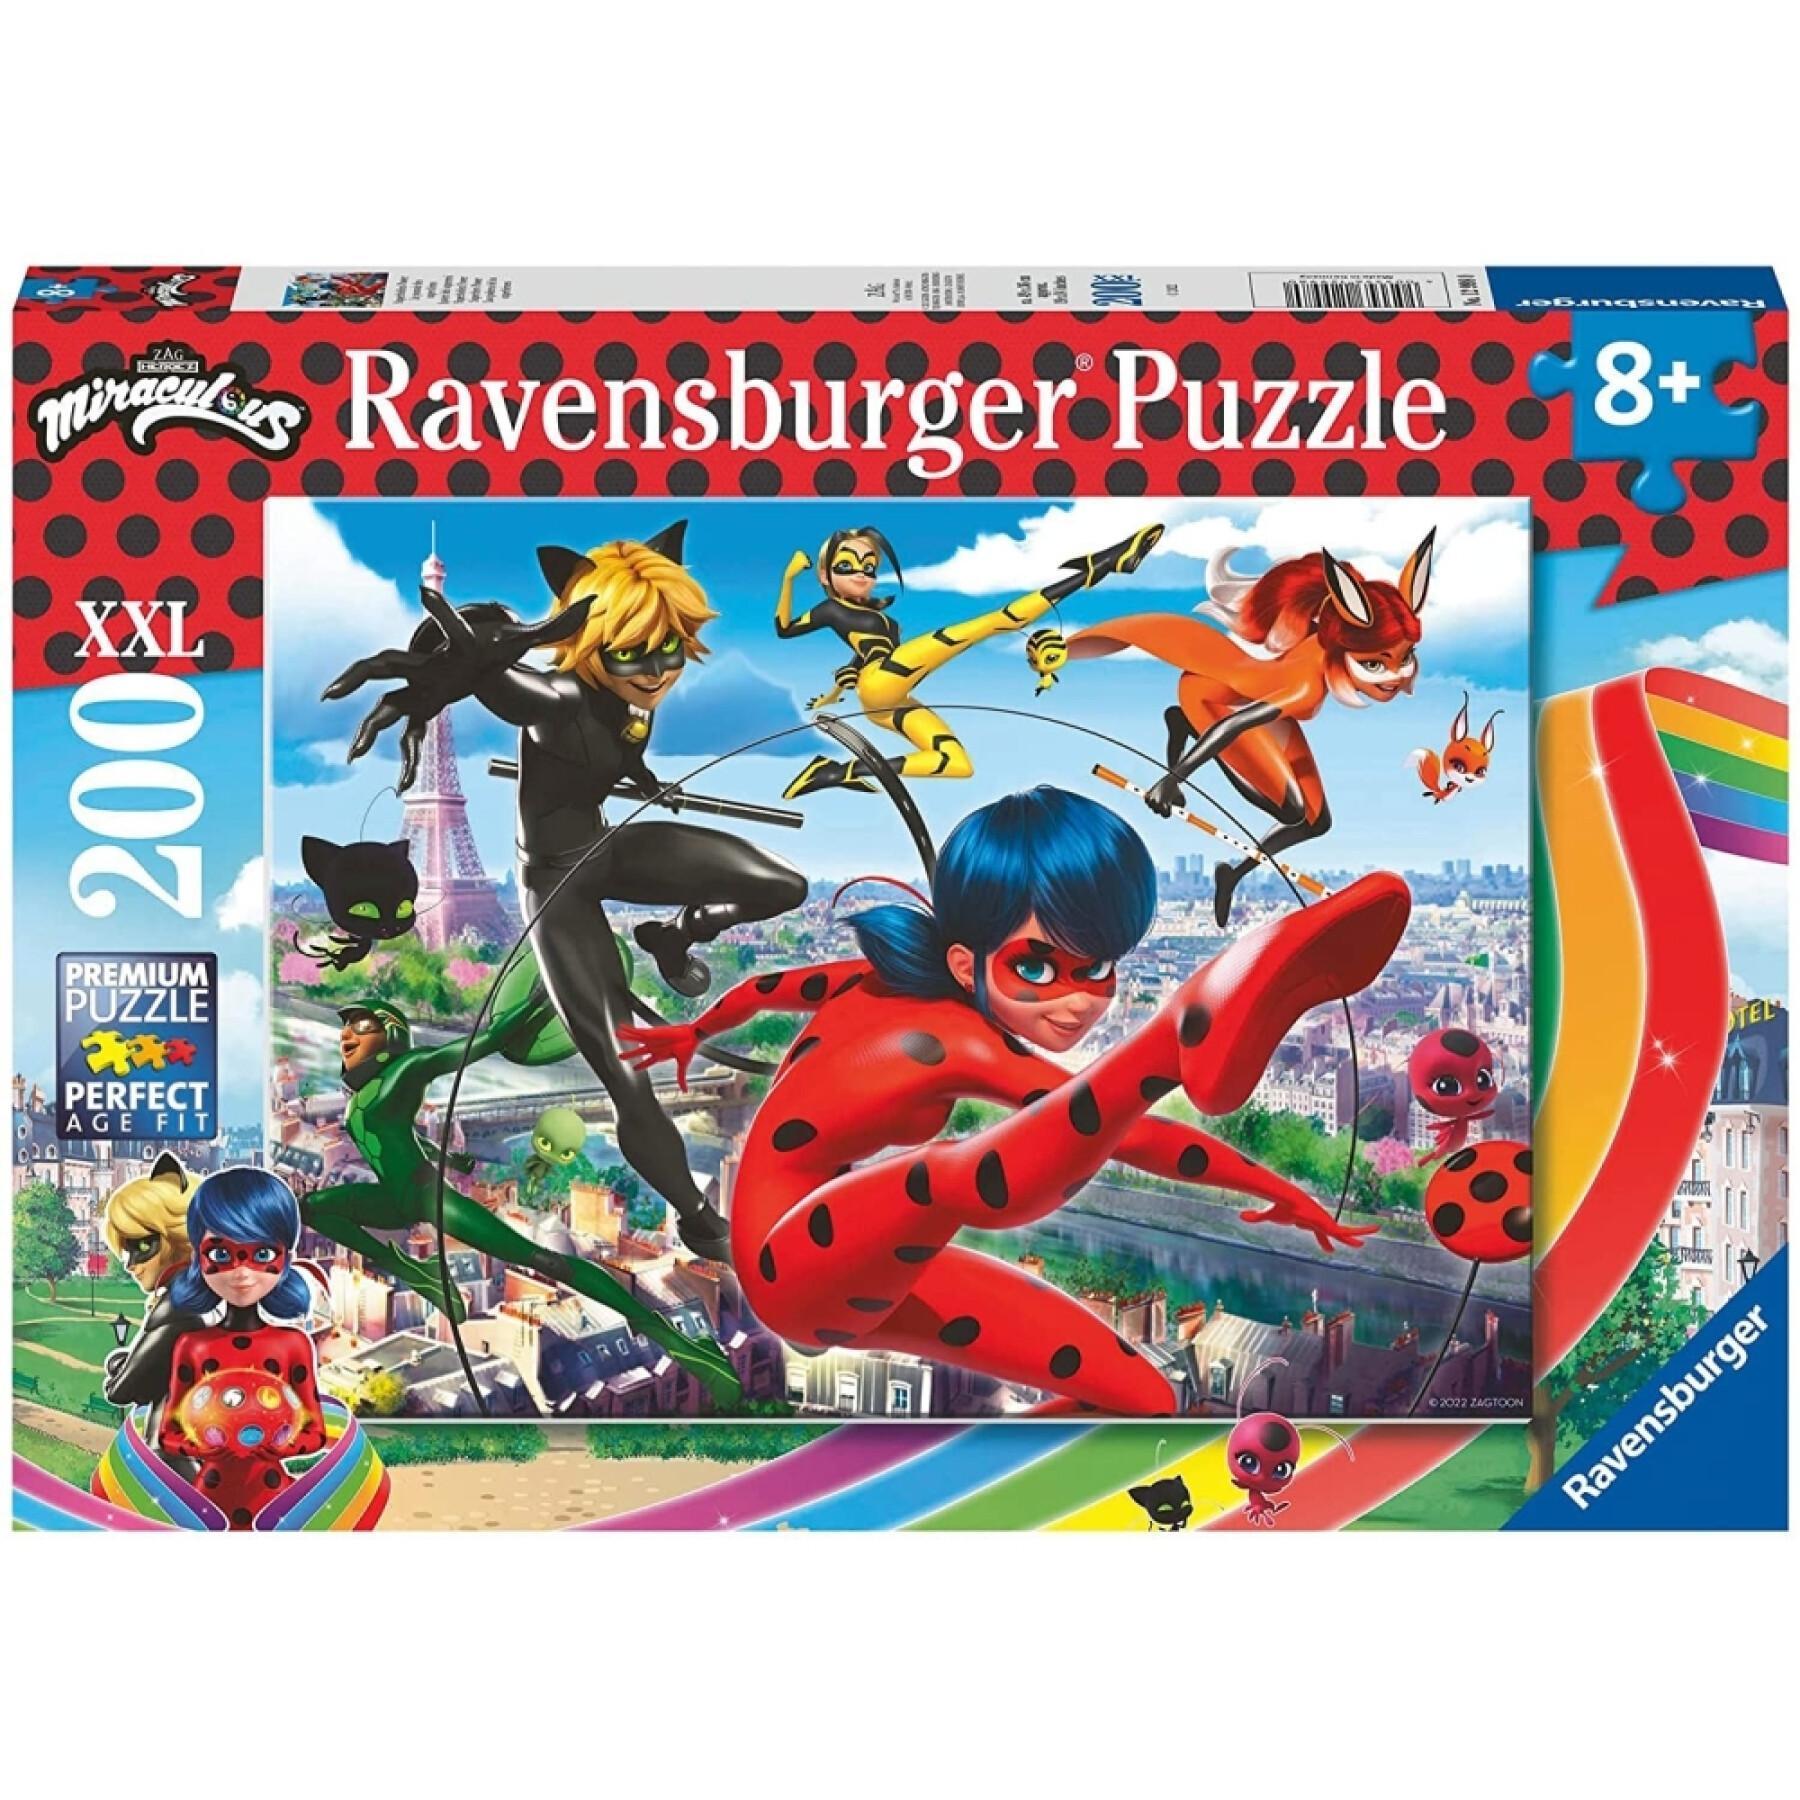 200 piece puzzle Ravensburger Ladybug